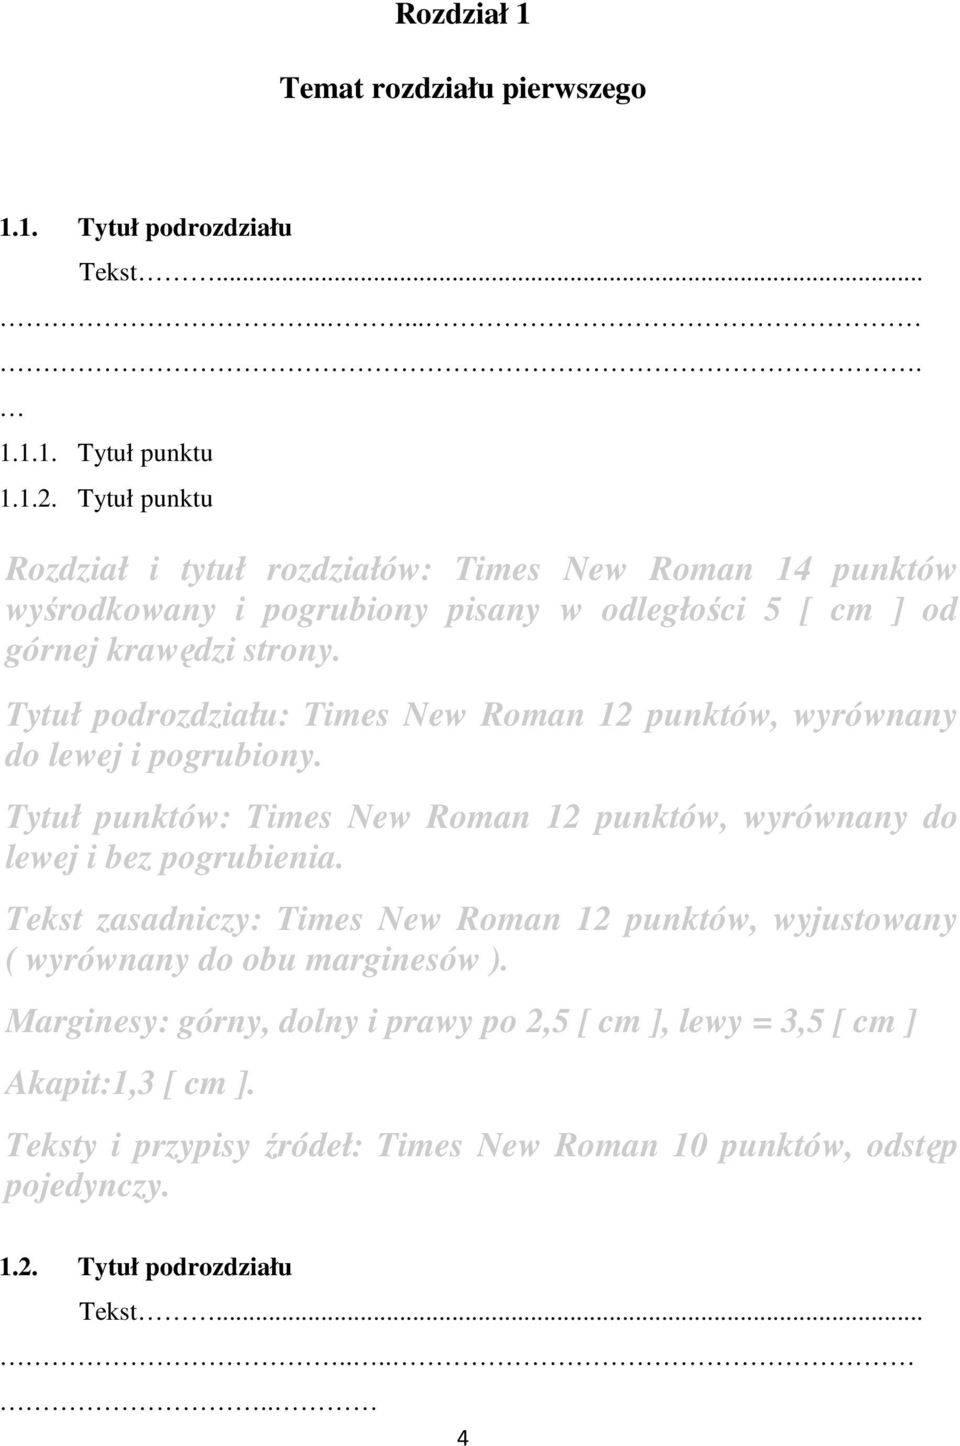 Tytuł podrozdziału: Times New Roman 12 punktów, wyrównany do lewej i pogrubiony. Tytuł punktów: Times New Roman 12 punktów, wyrównany do lewej i bez pogrubienia.